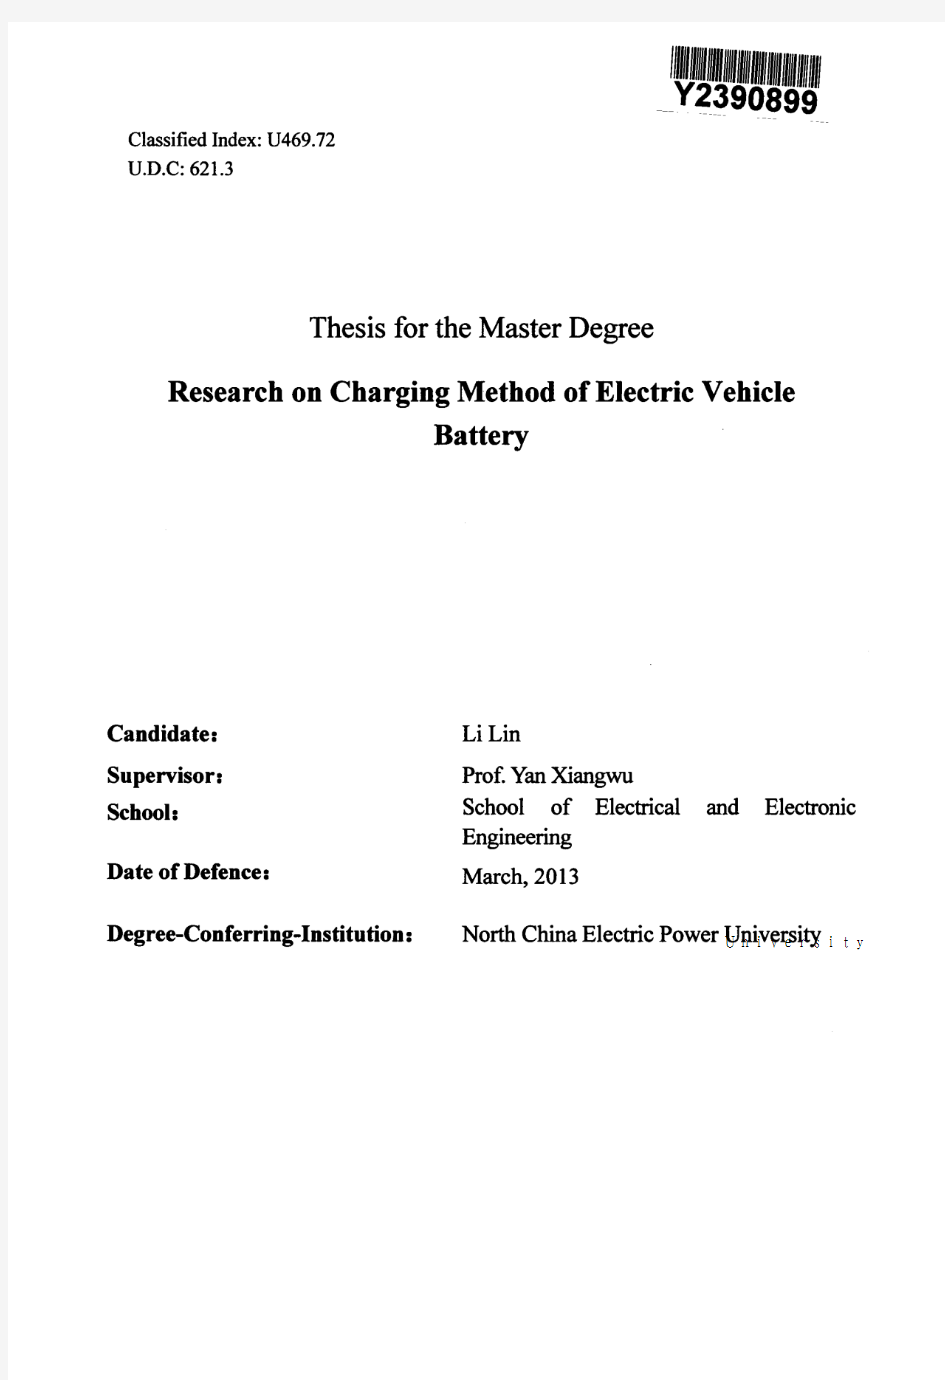 电动汽车动力电池的充电方法的研究